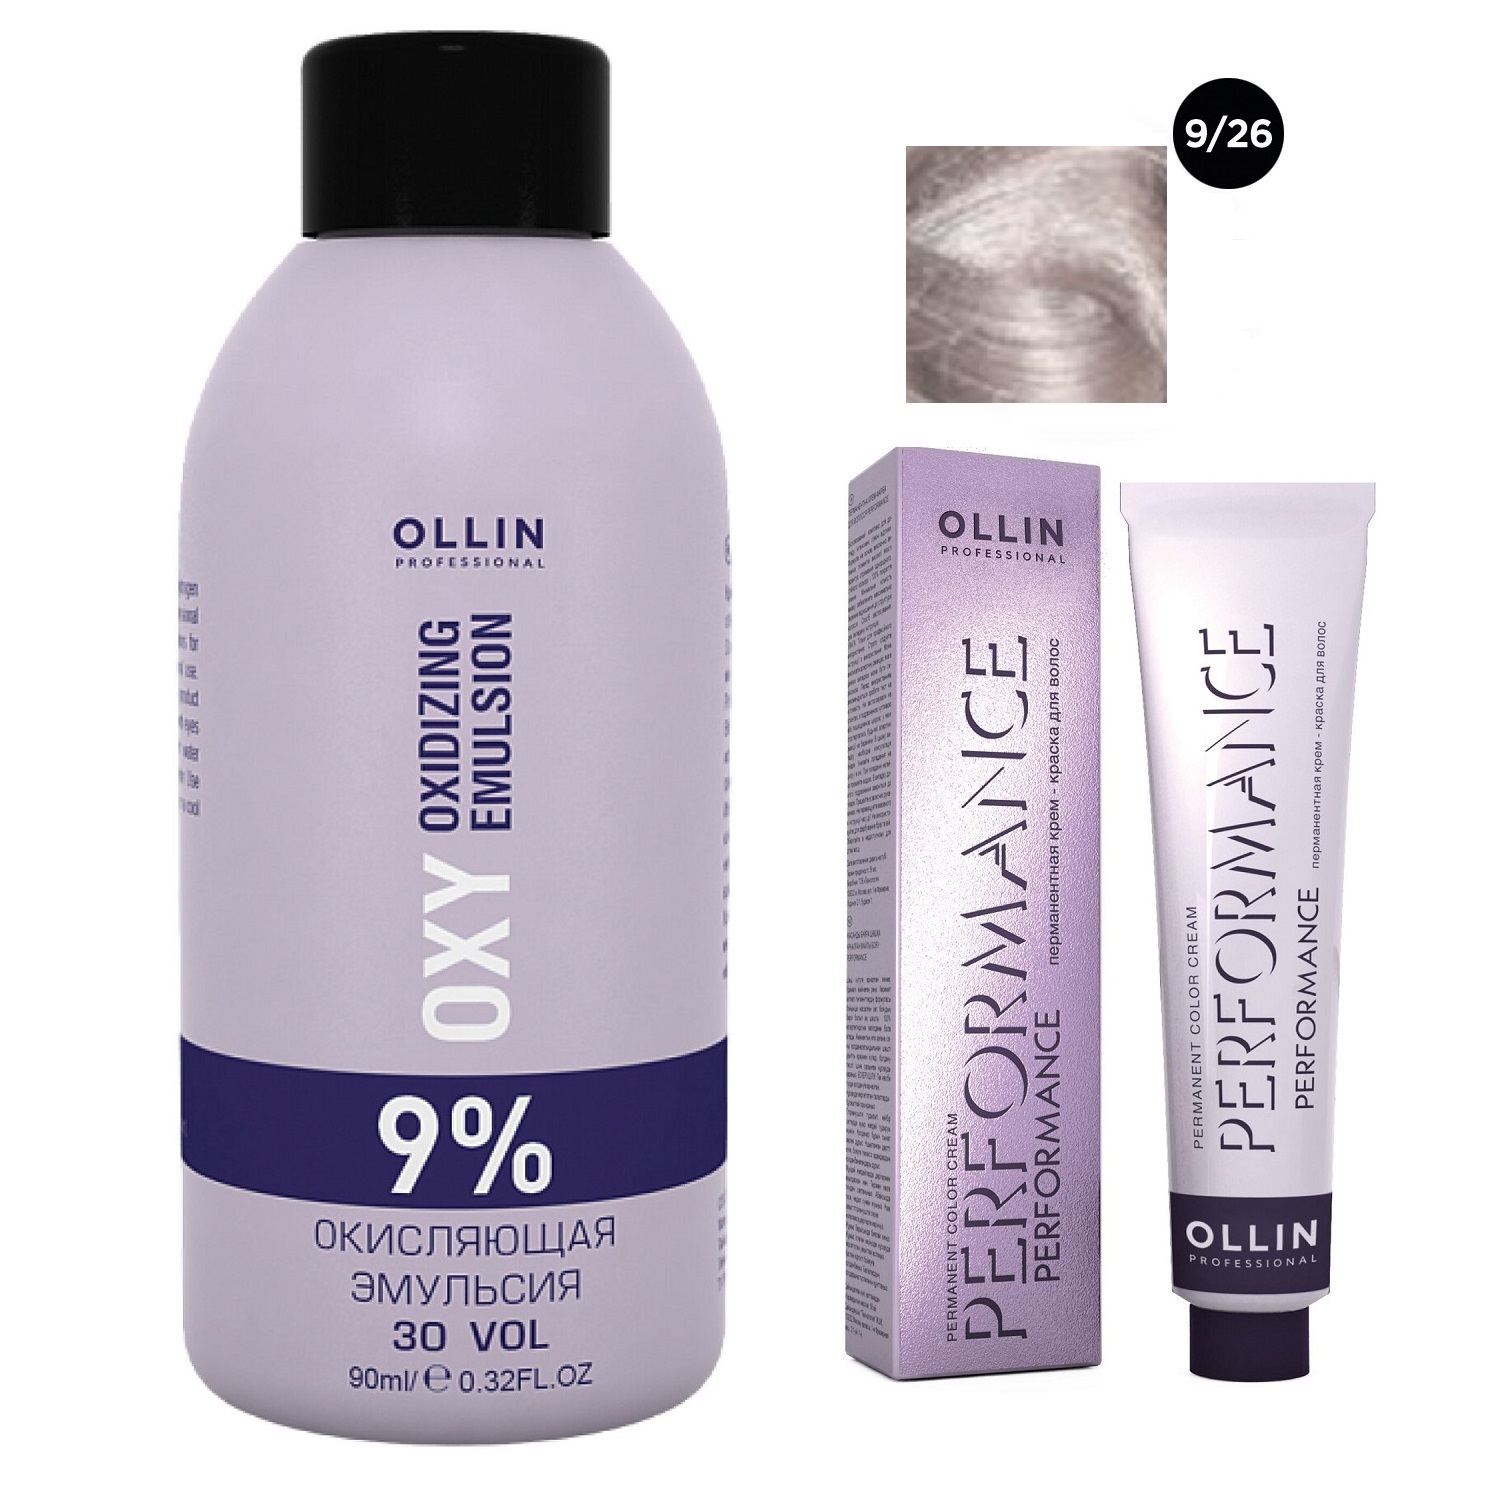 Ollin Professional Набор Перманентная крем-краска для волос Ollin Performance оттенок 9/26 блондин розовый 60 мл + Окисляющая эмульсия Oxy 9% 90 мл (Ollin Professional, Performance)